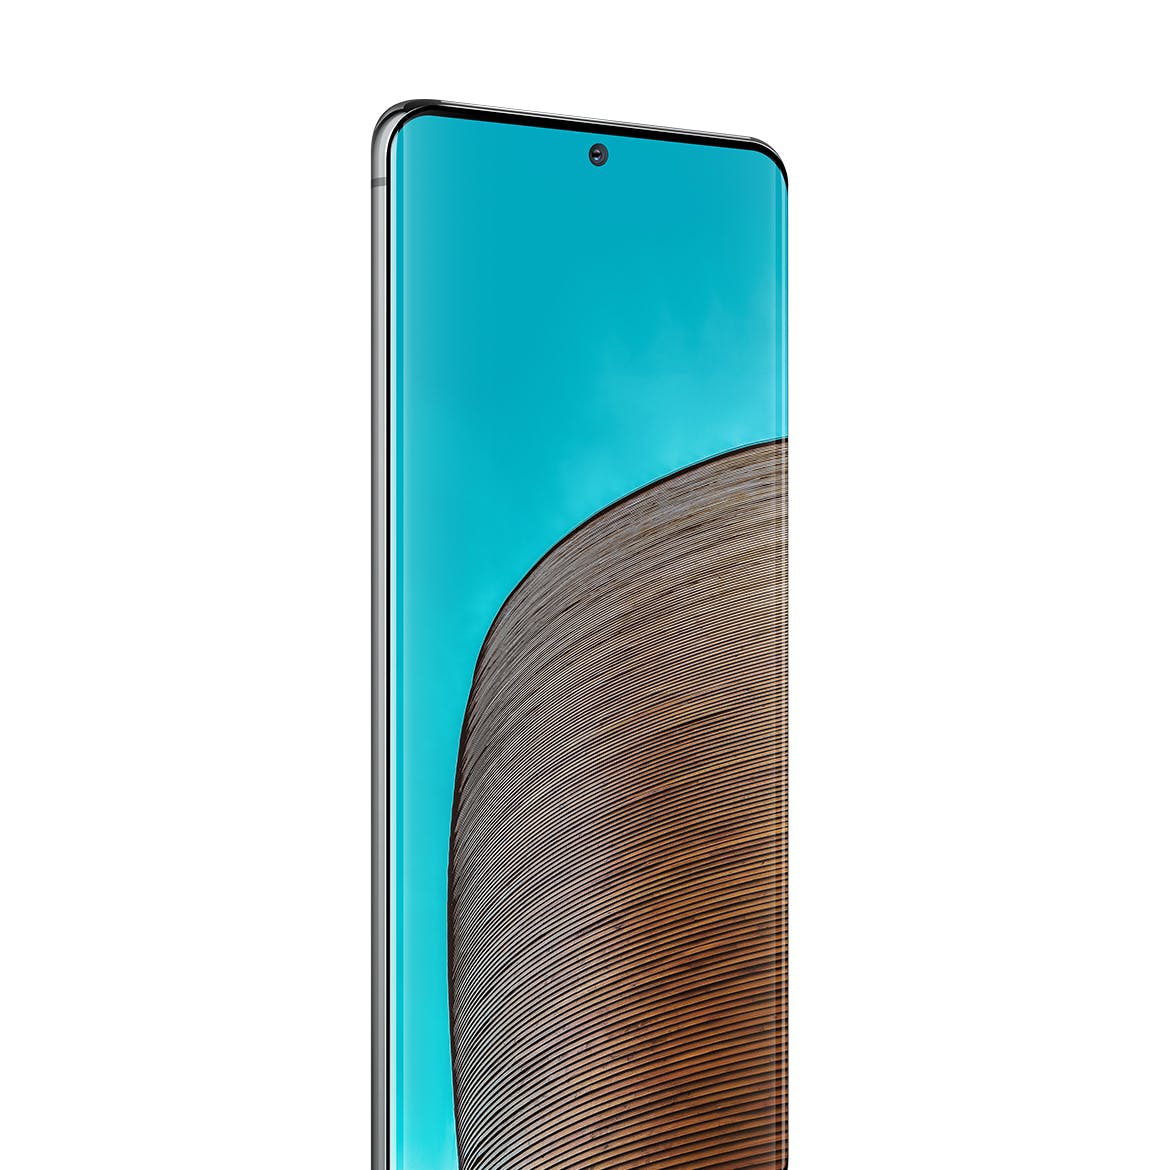 三星Galaxy S20 Ultra智能手机UI设计屏幕预览素材中国精选样机 S20 Ultra Layered PSD Mockups插图(2)